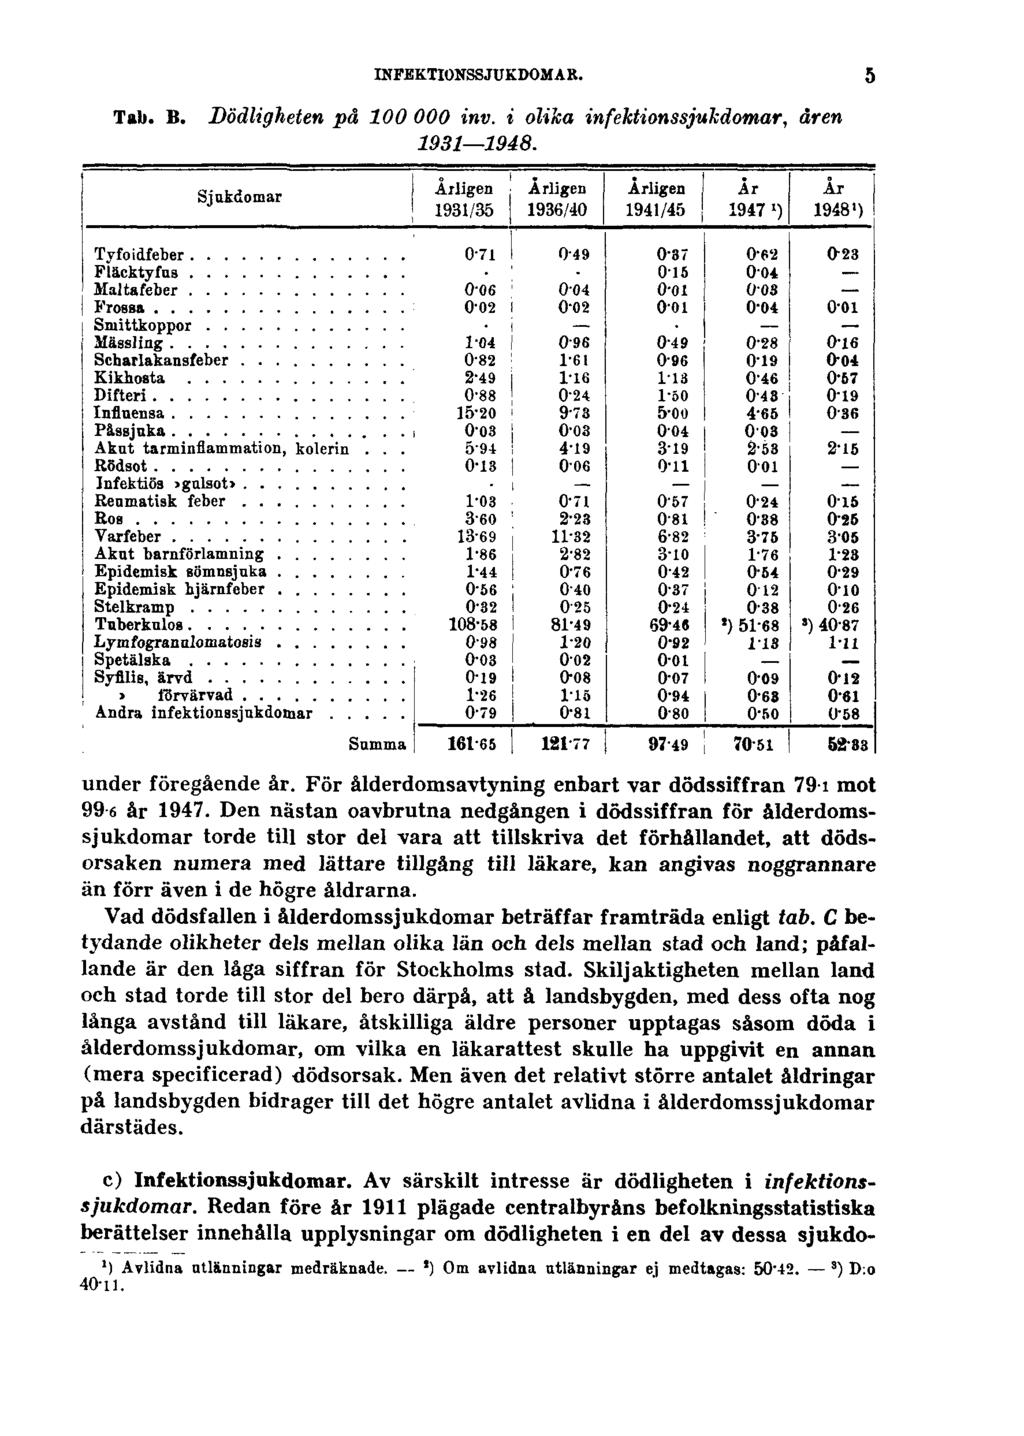 INFEKTIONSSJUKDOMAR. Tab. B. Dödligheten på 100000 inv. i olika infektionssjukdomar, åren 1931 1948. 5 under föregående år. För ålderdomsavtyning enbart var dödssiffran 79.1 mot 996 år 1947.